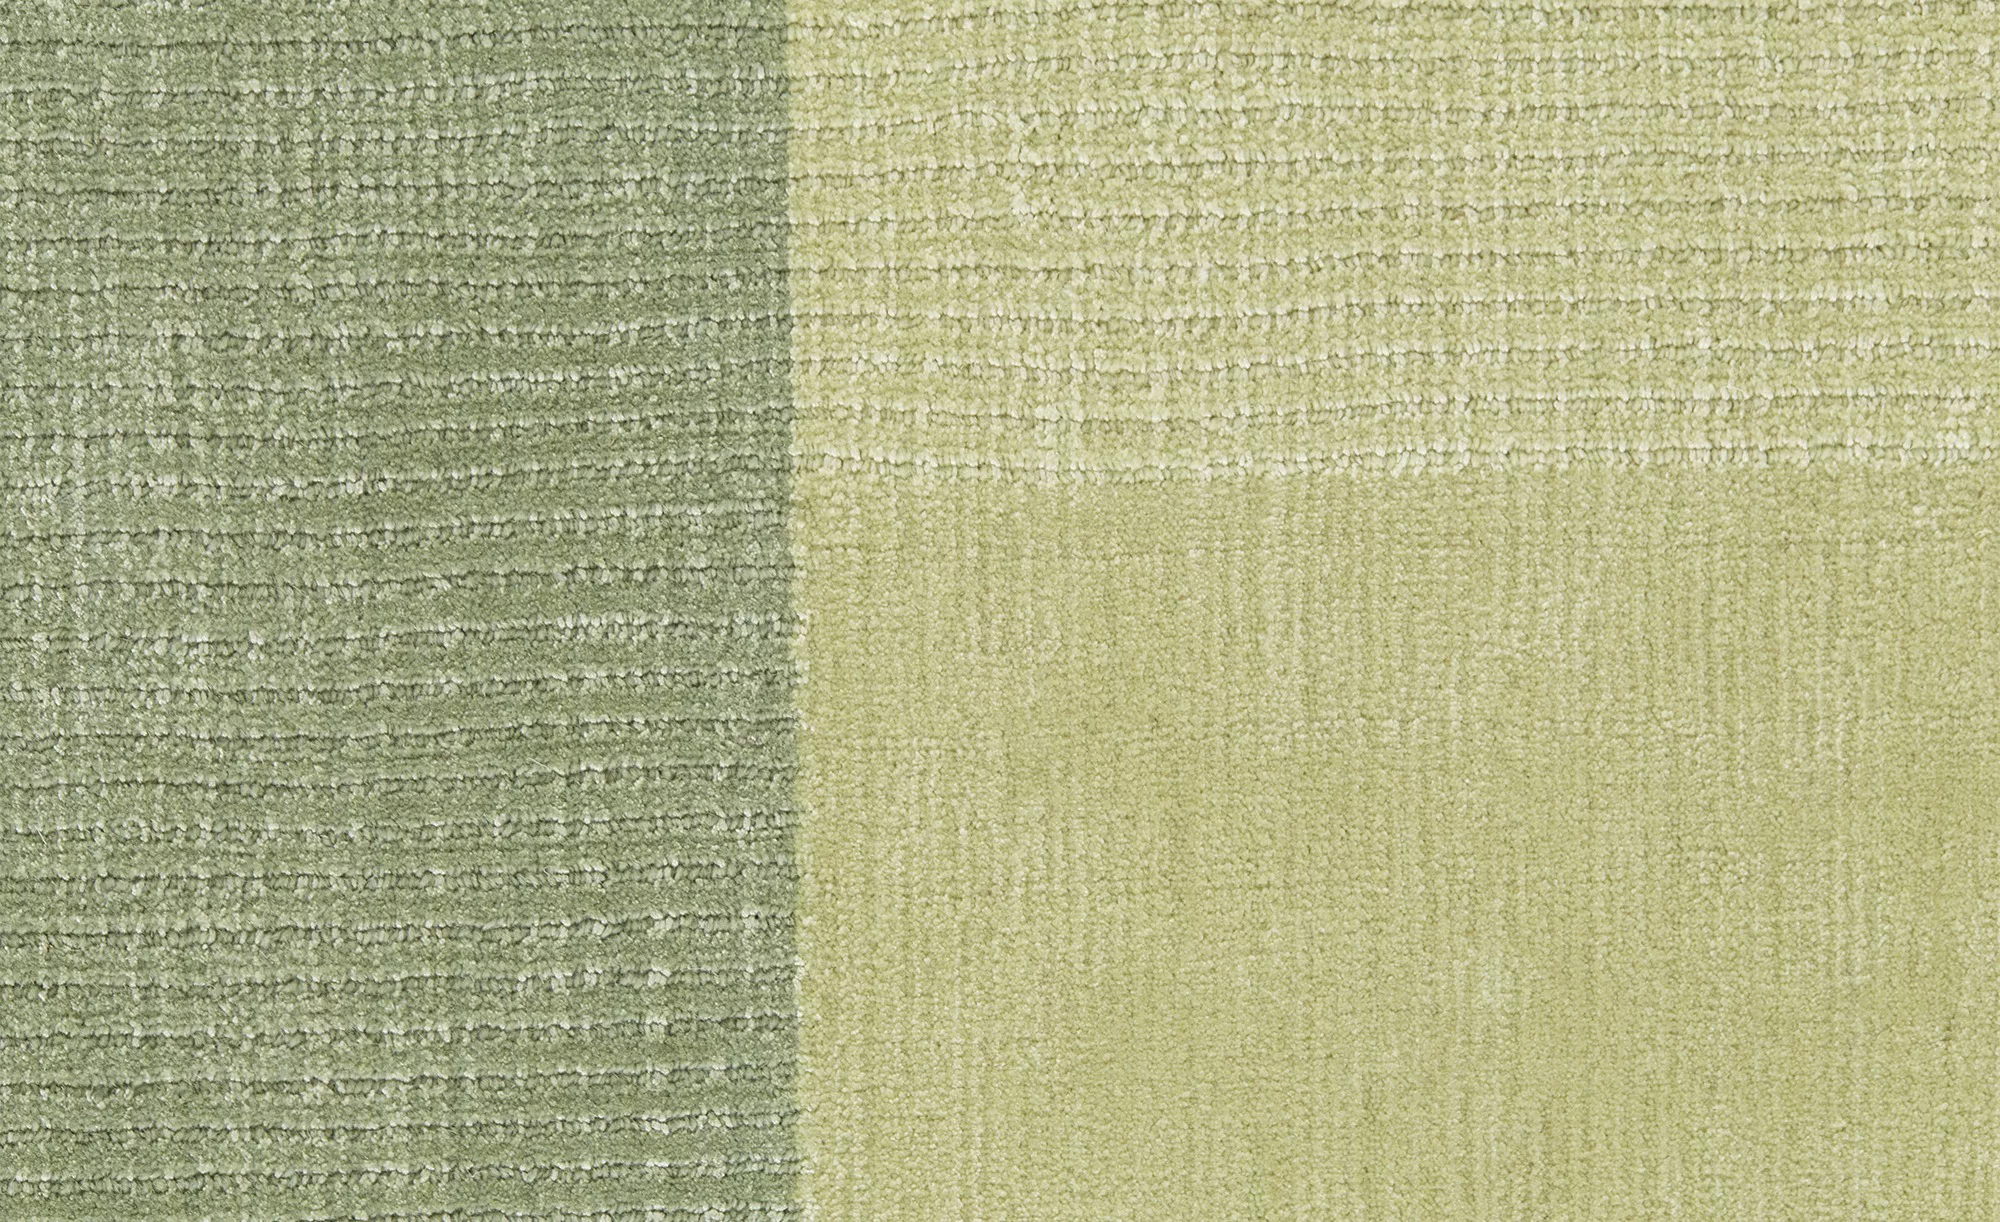 Handloom Teppich  Campi ¦ grün ¦ Viskose, Baumwolle ¦ Maße (cm): B: 90 H: 0 günstig online kaufen